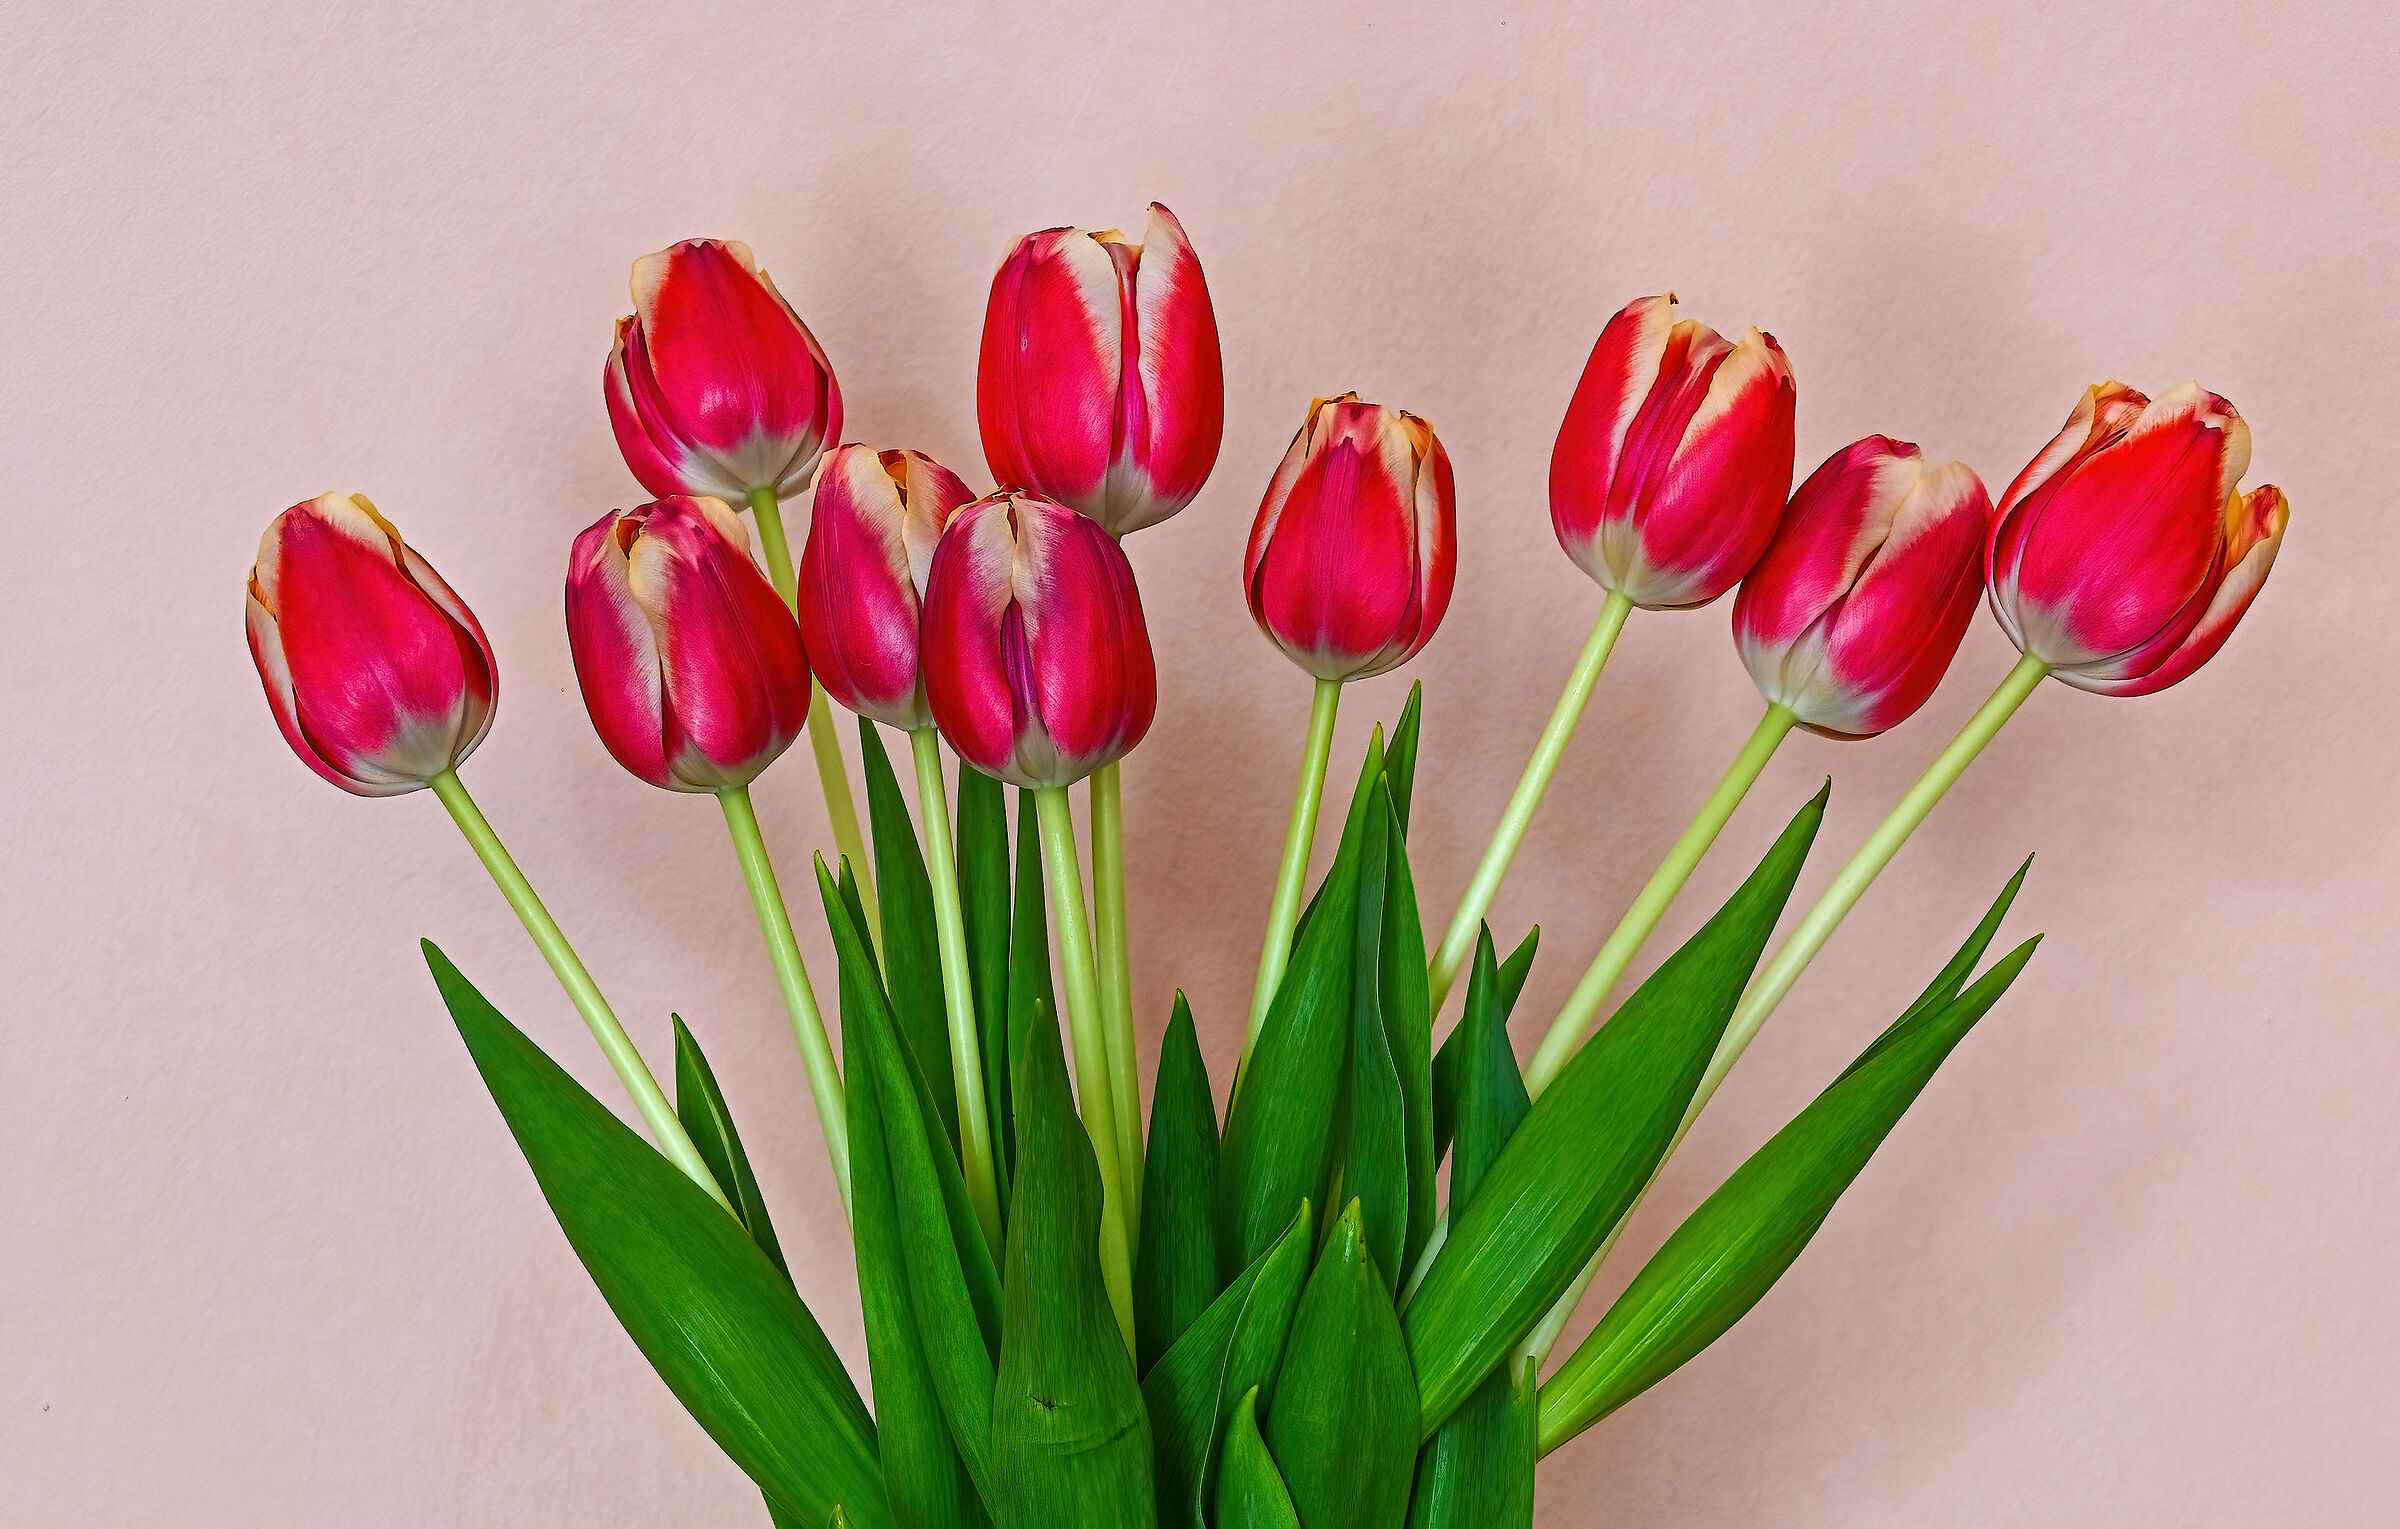 My tulips...